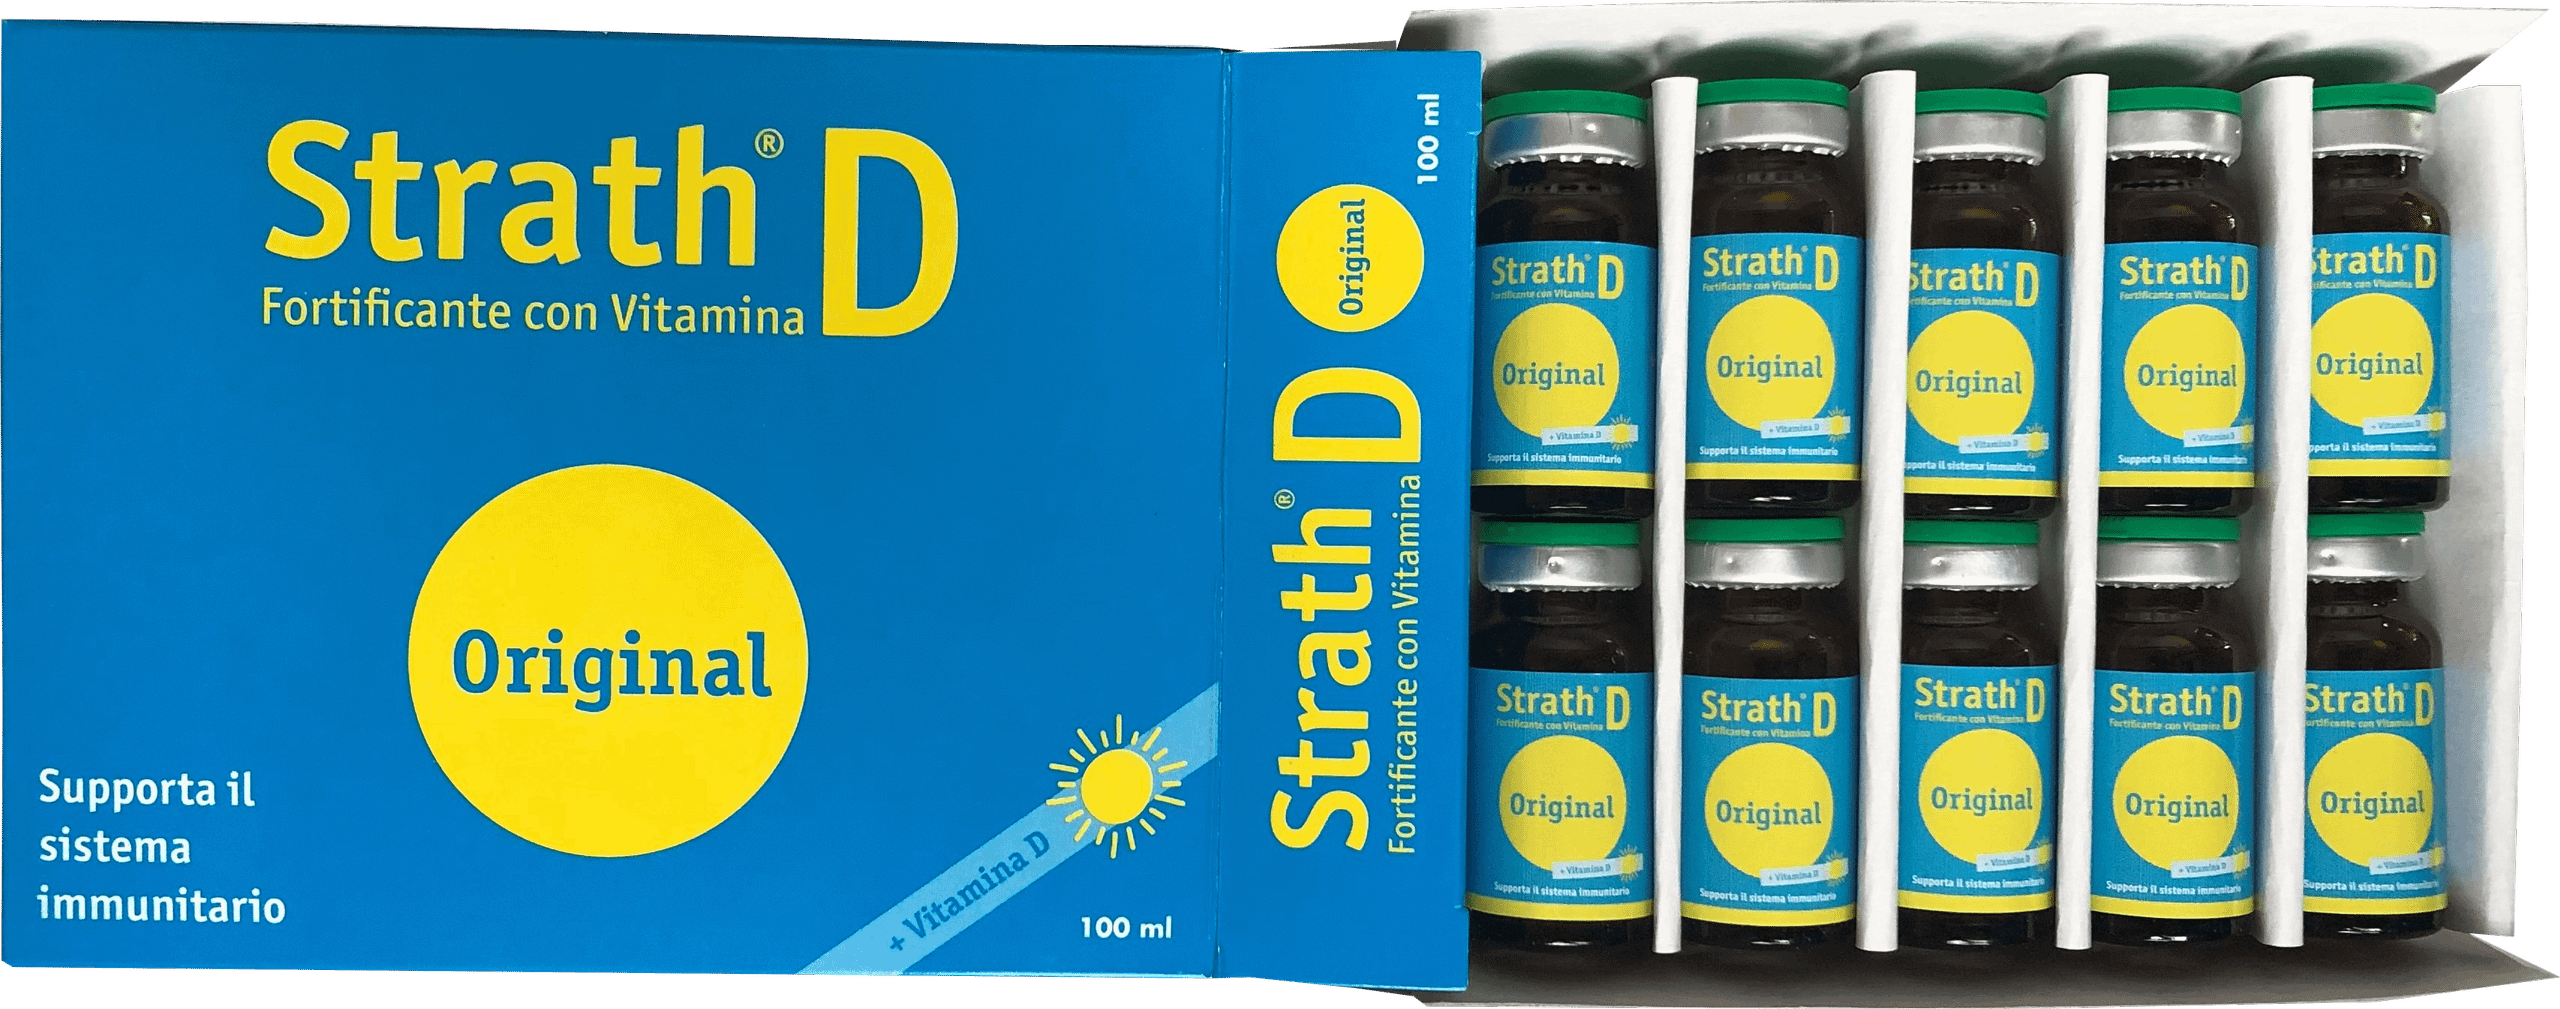 STRATH D - Fortificante con vitamina D #PromoNovembre